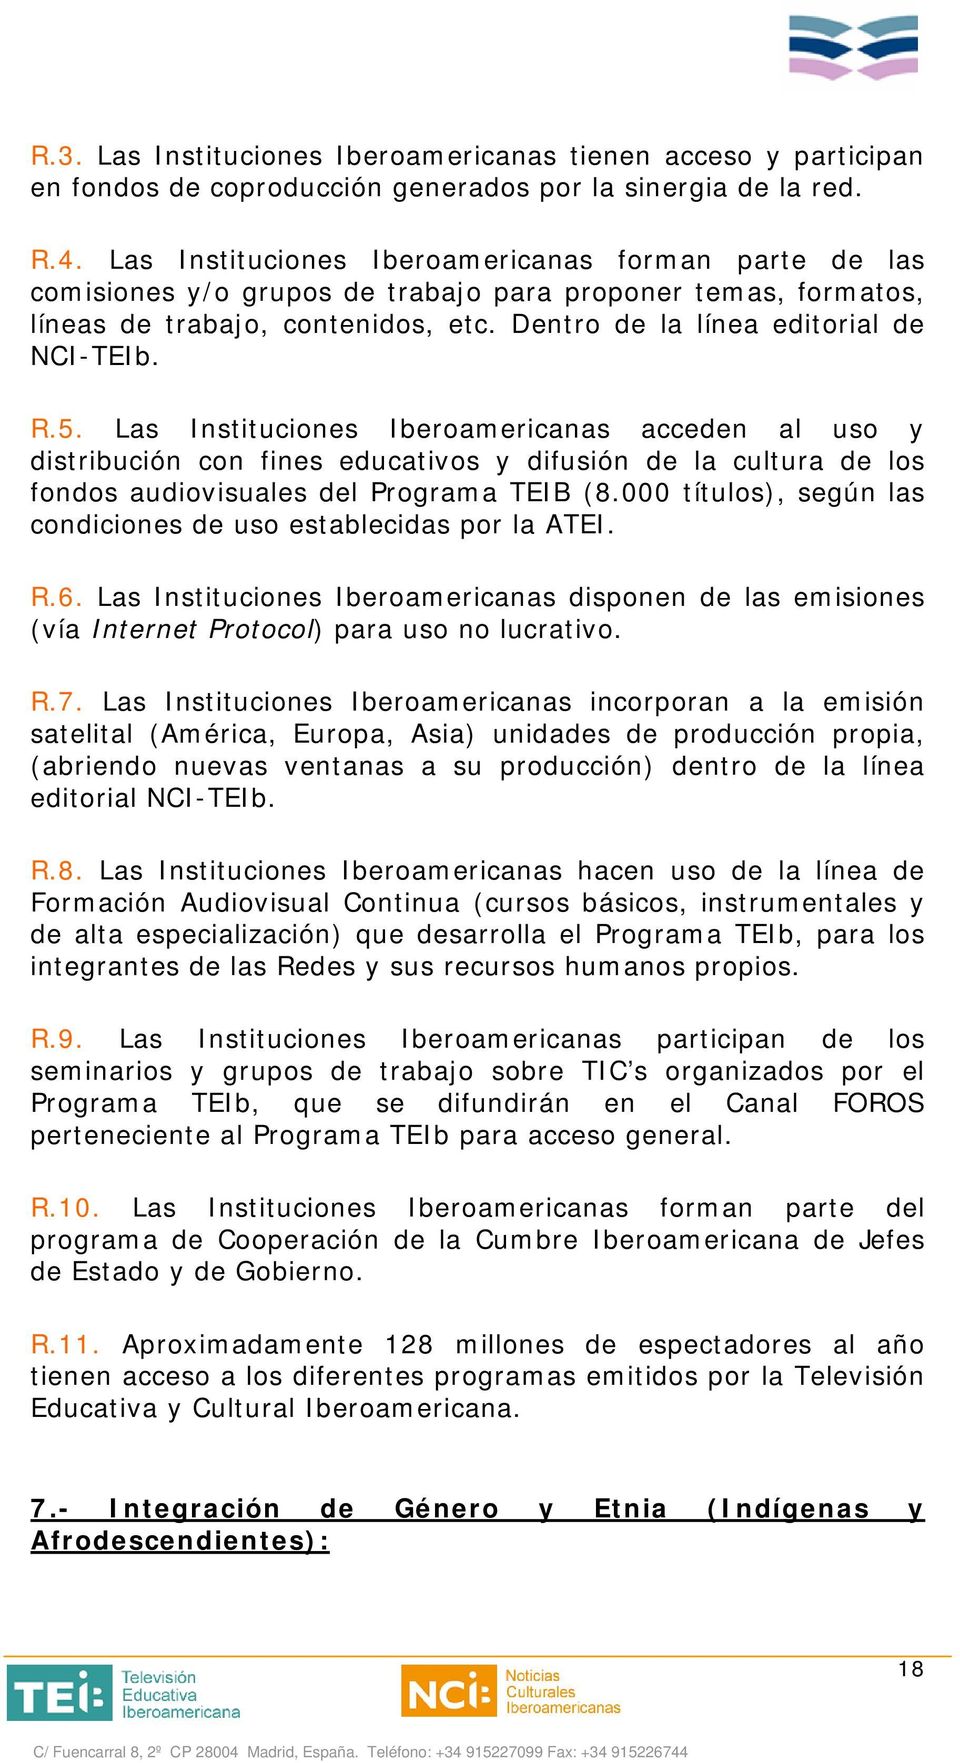 Las Instituciones Iberoamericanas acceden al uso y distribución con fines educativos y difusión de la cultura de los fondos audiovisuales del Programa TEIB (8.